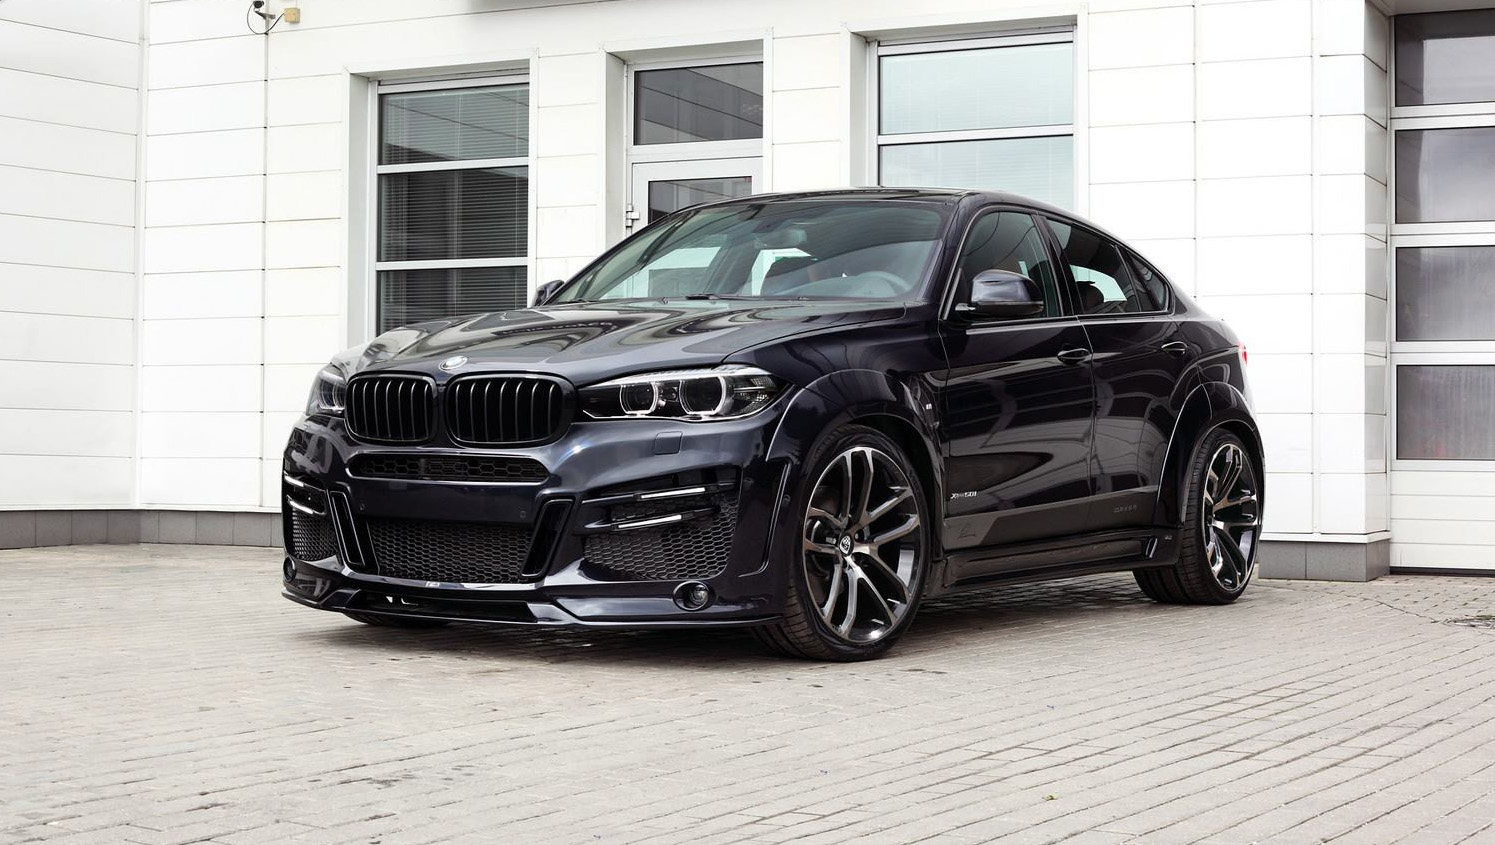 BMW x6. Lumma 2019